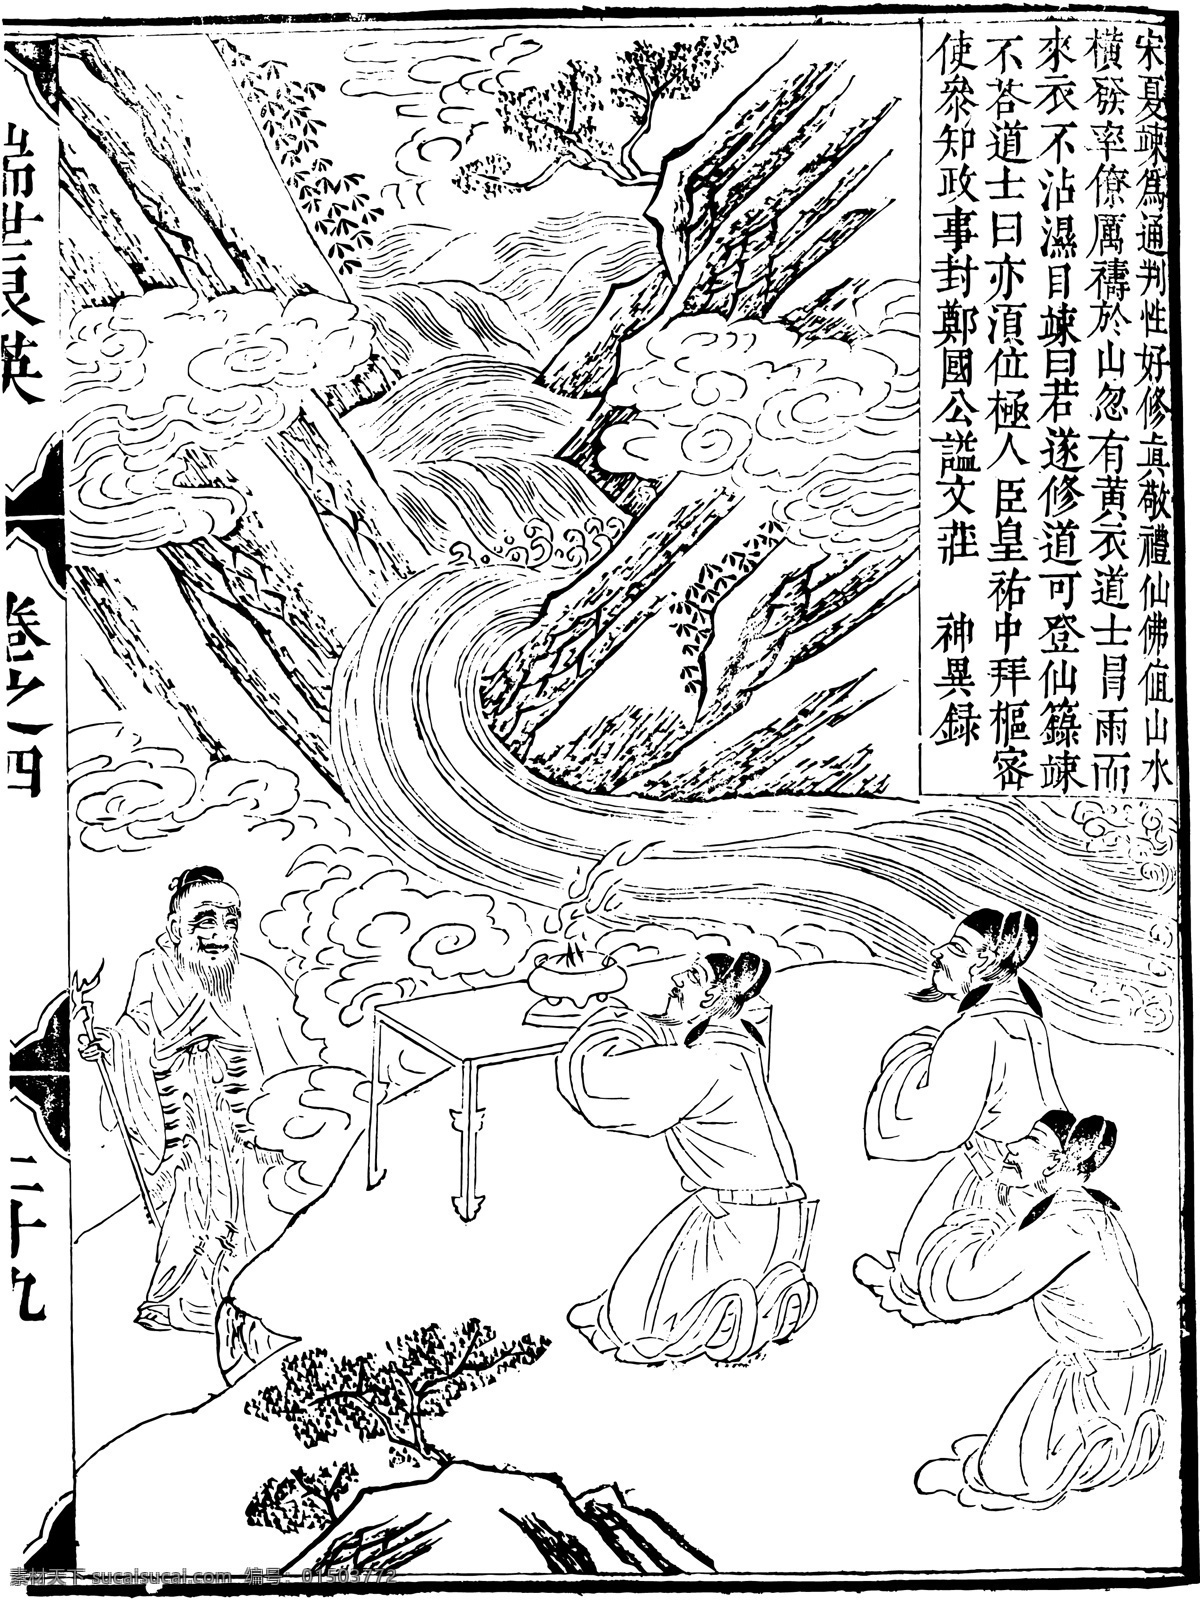 瑞世良英 木刻版画 中国 传统文化 中国传统文化 设计素材 版画世界 书画美术 白色